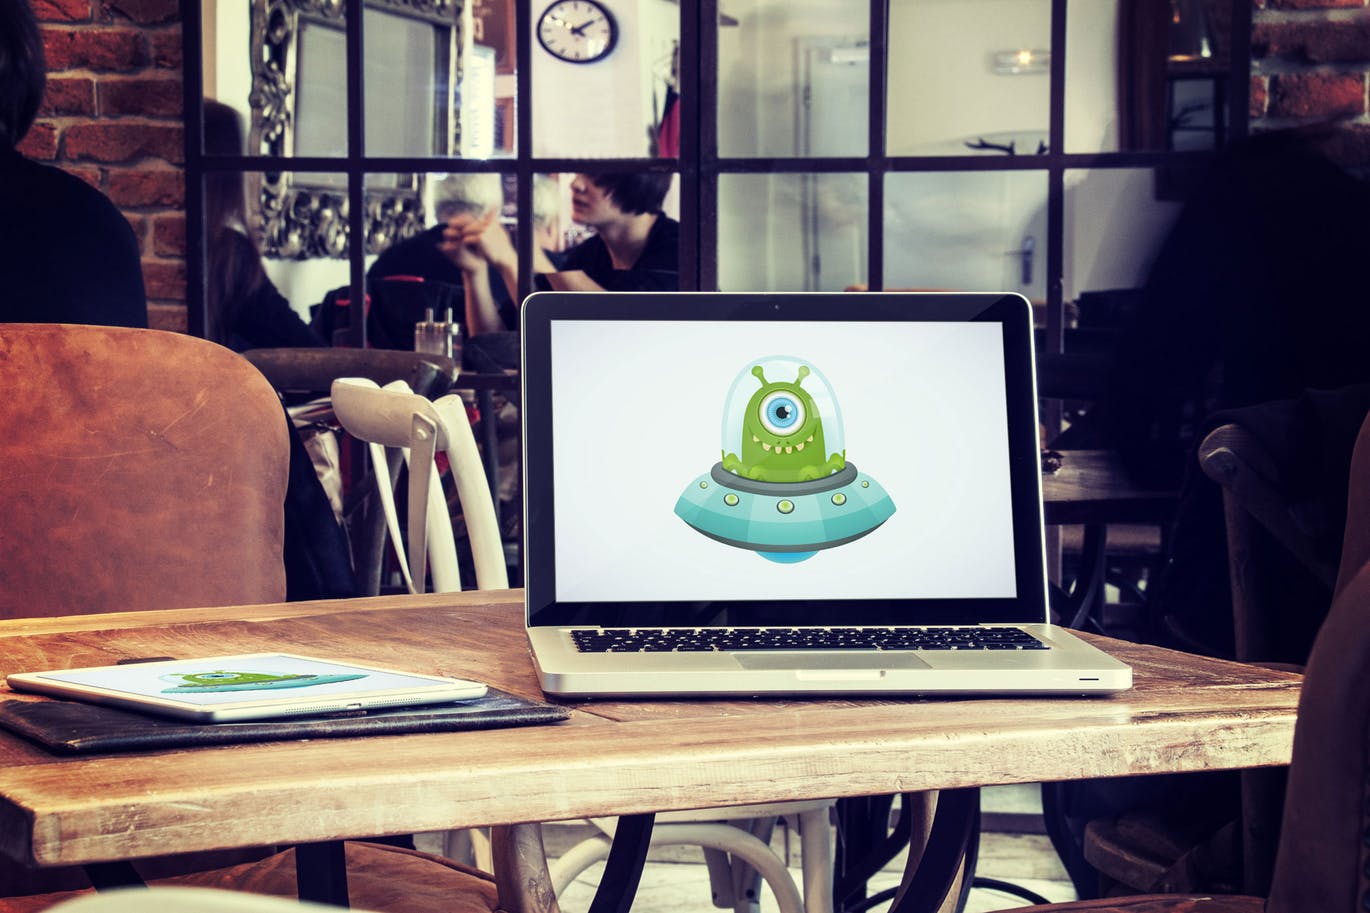 咖啡厅场景笔记本电脑&平板电脑屏幕预览素材库精选样机v3 5 Laptop and tablet mock-ups in cafe Vol. 3插图(1)